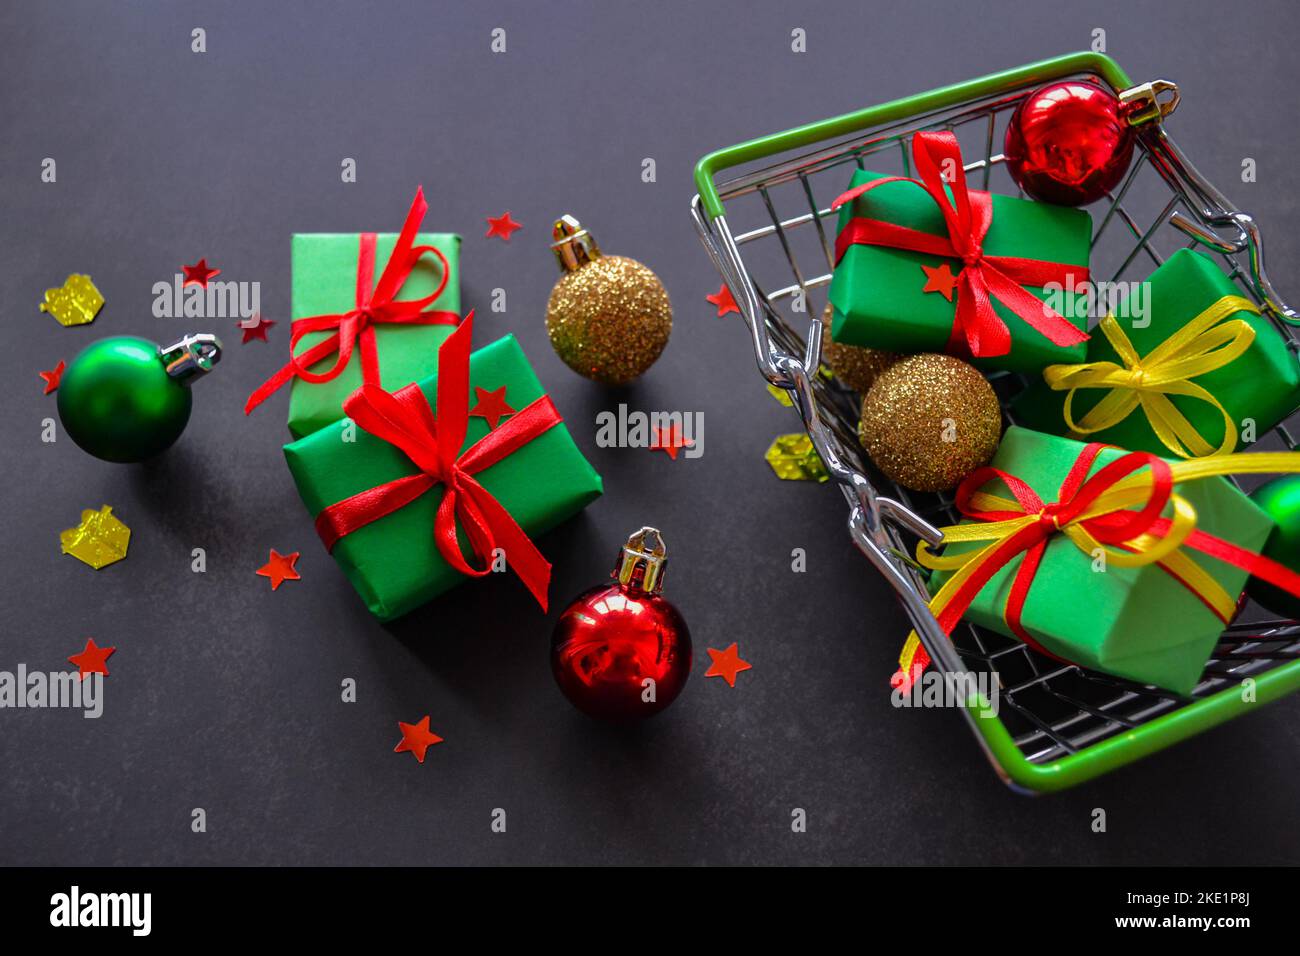 Carrello con regali in carta verde, archi rossi e gialli, palle di Natale di rosso, verde, oro su sfondo nero. Alcuni regali, palle si trovano vicino. Foto Stock